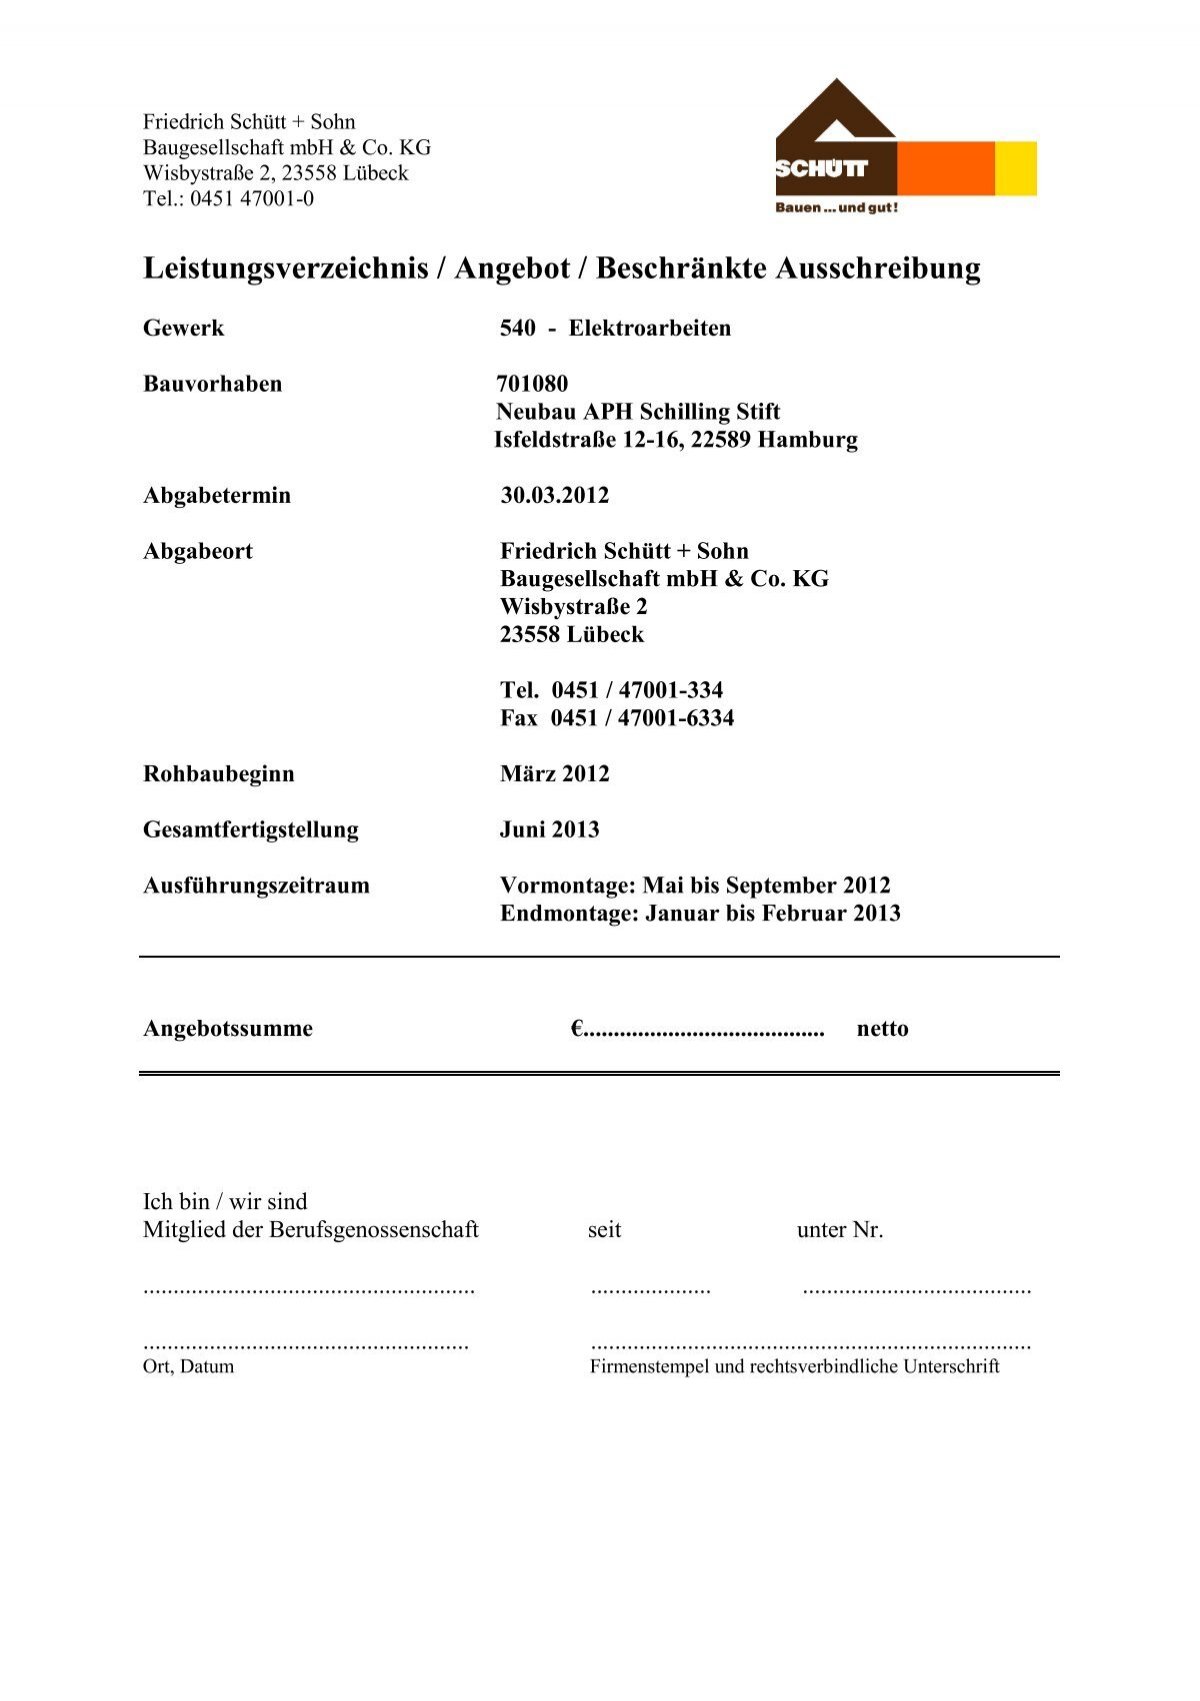 PDF SCHÜTT Schilling Stift LOS 4 - Elektro- 13.03.12.12